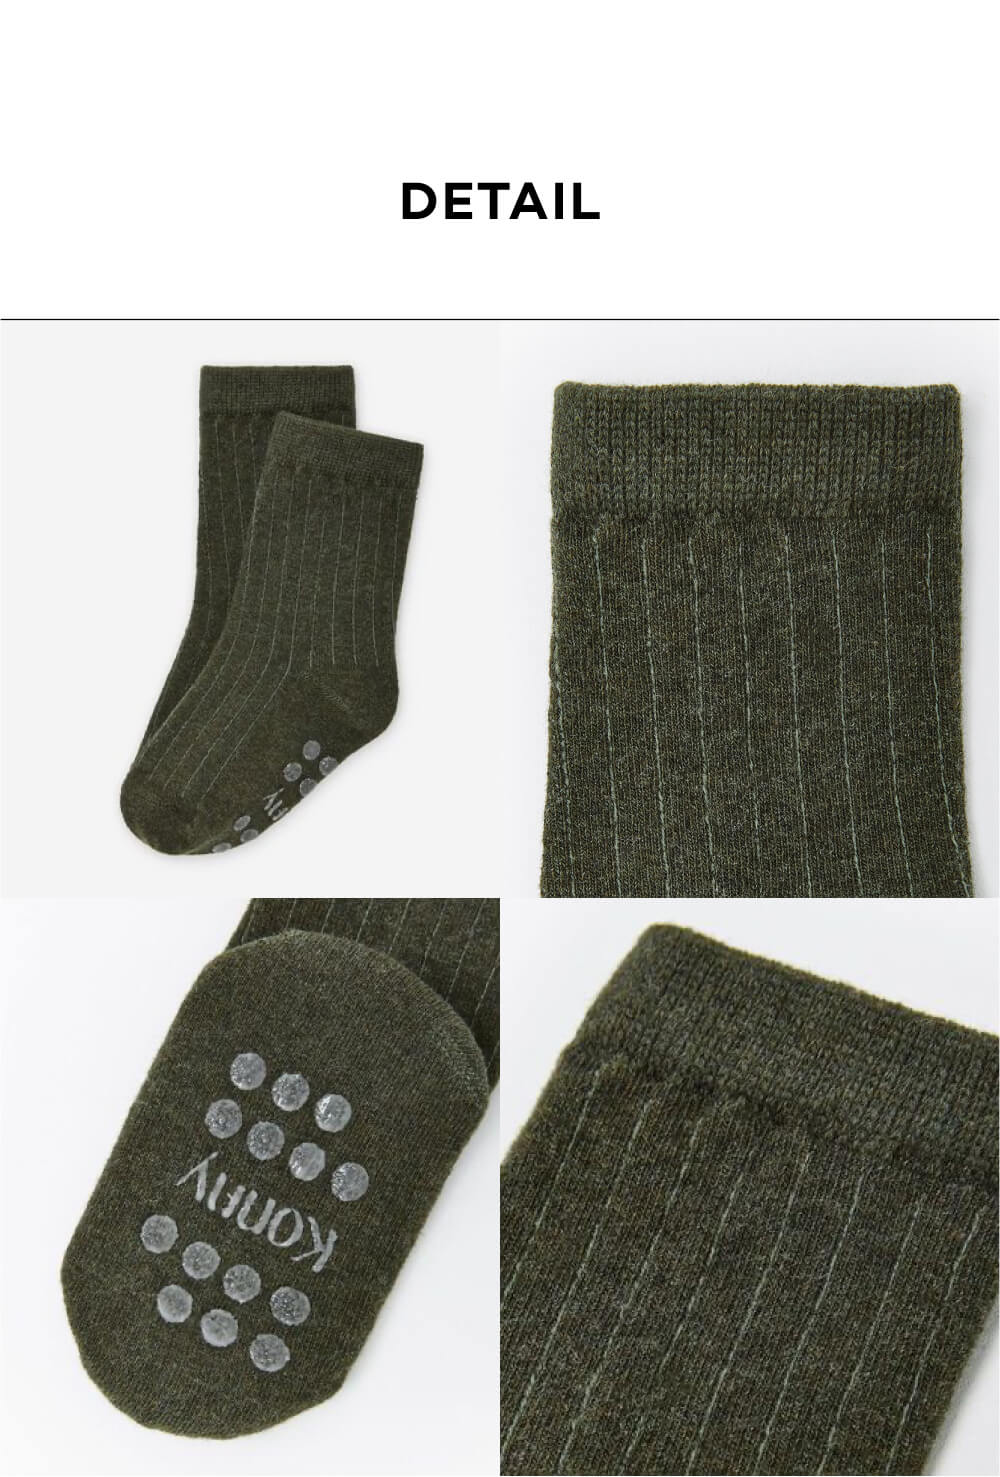 Konny Baby Essential Socks - 4 Color Set (12M-7Y)